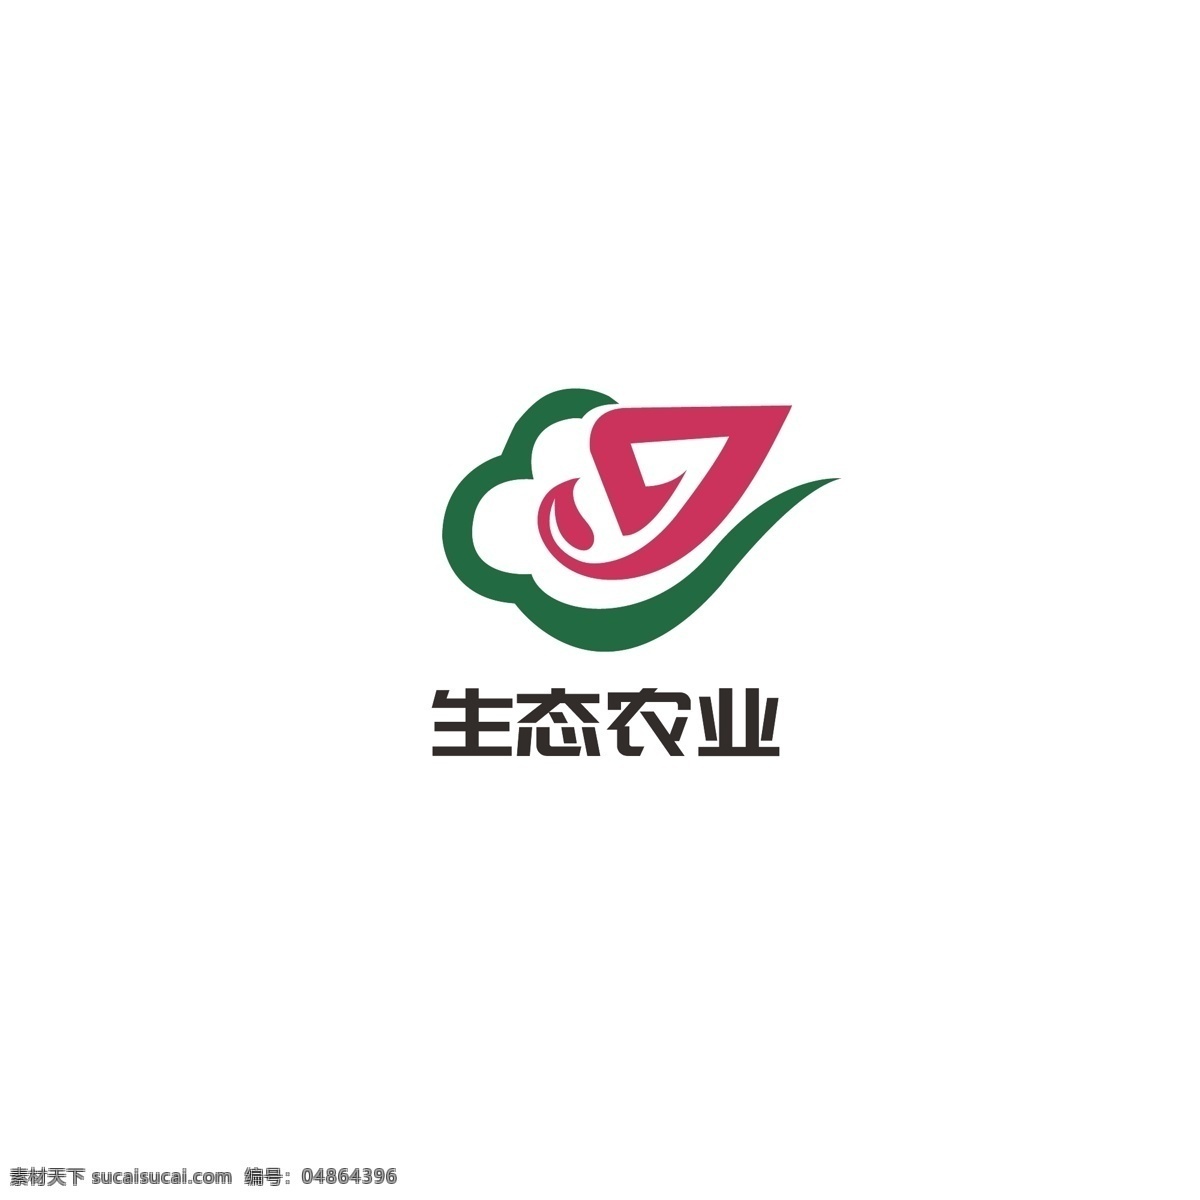 生态农业 logo 健康 简约 祥云 绿色 叶子 生态 农业 字母g